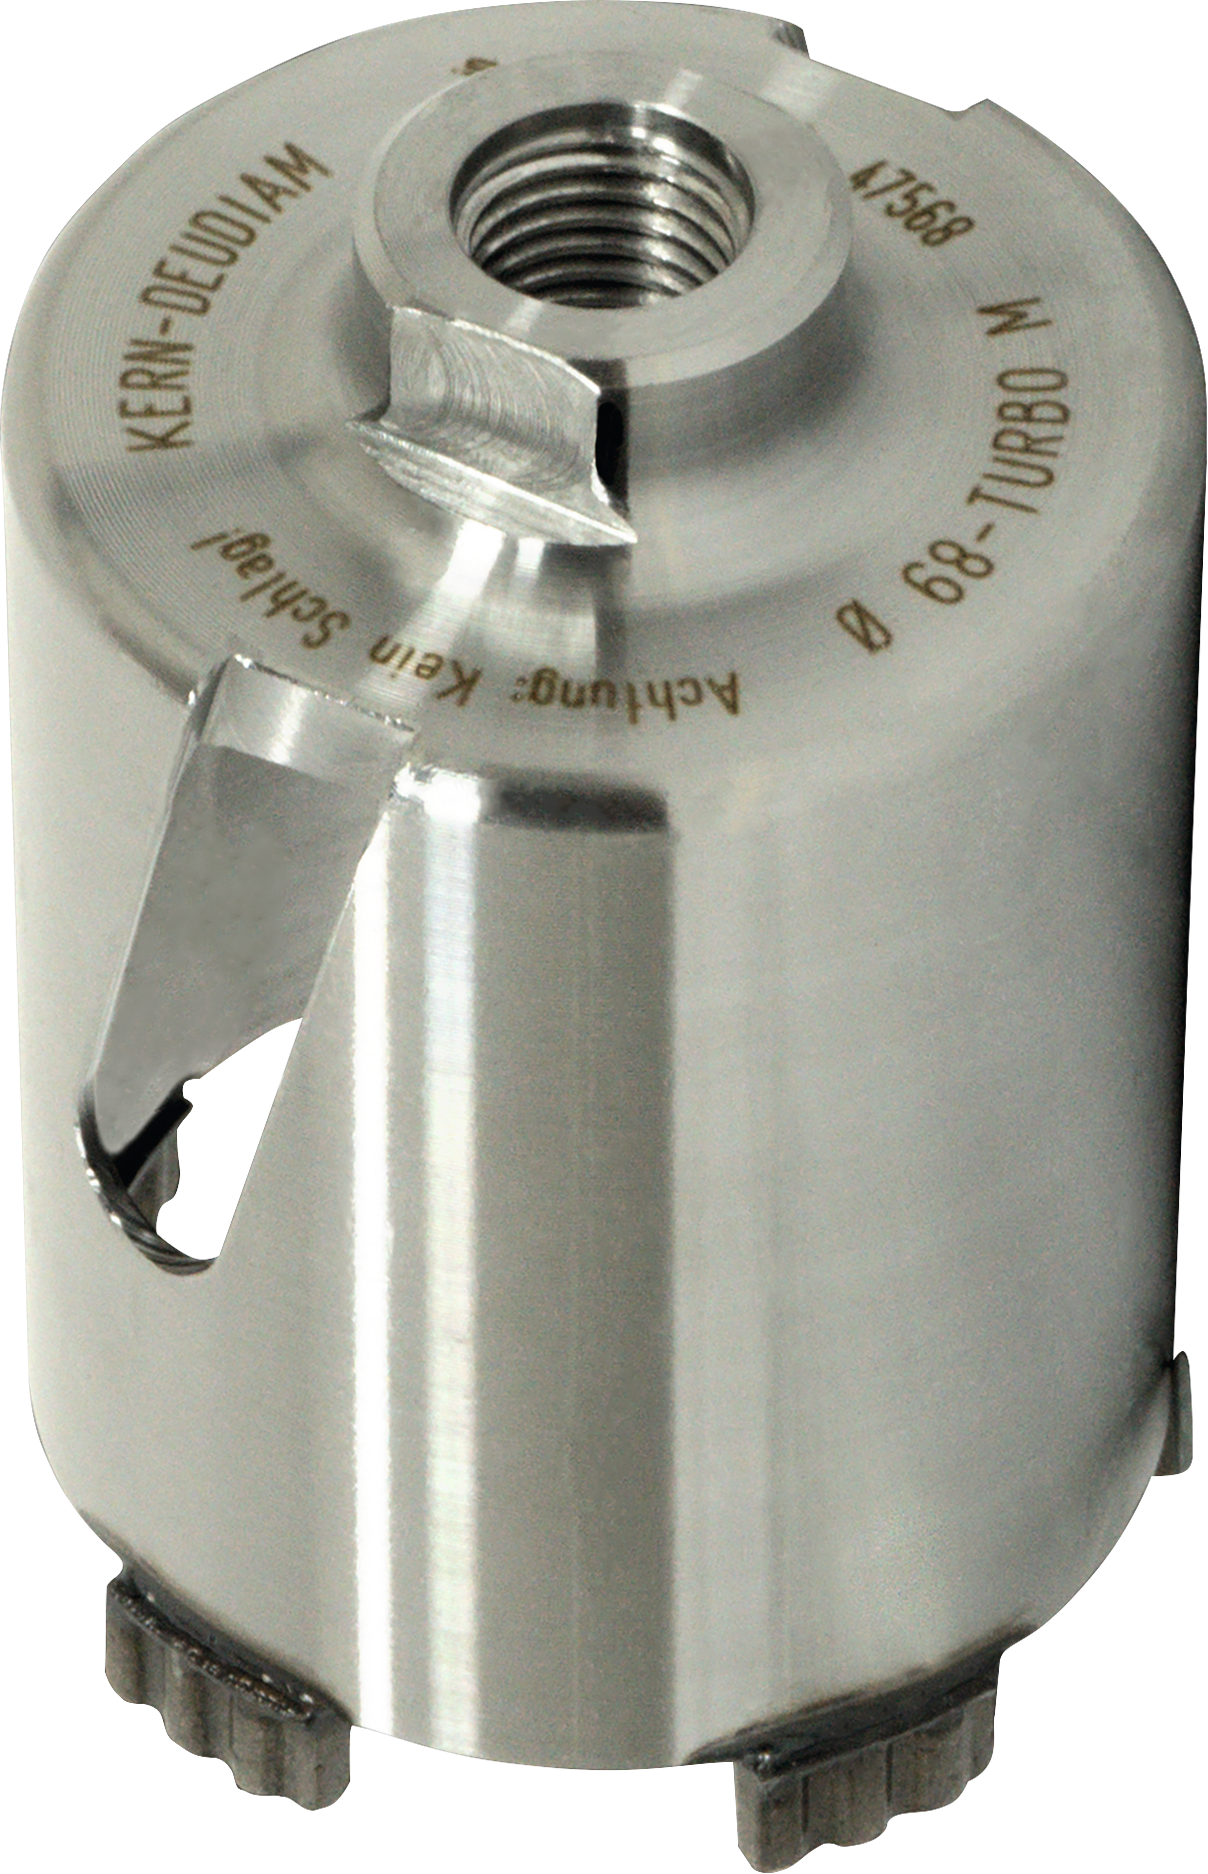 Trockenbohrkrone Diamant Turbo M mit Aufnahme M16 Nutzlänge 70mm D68mm